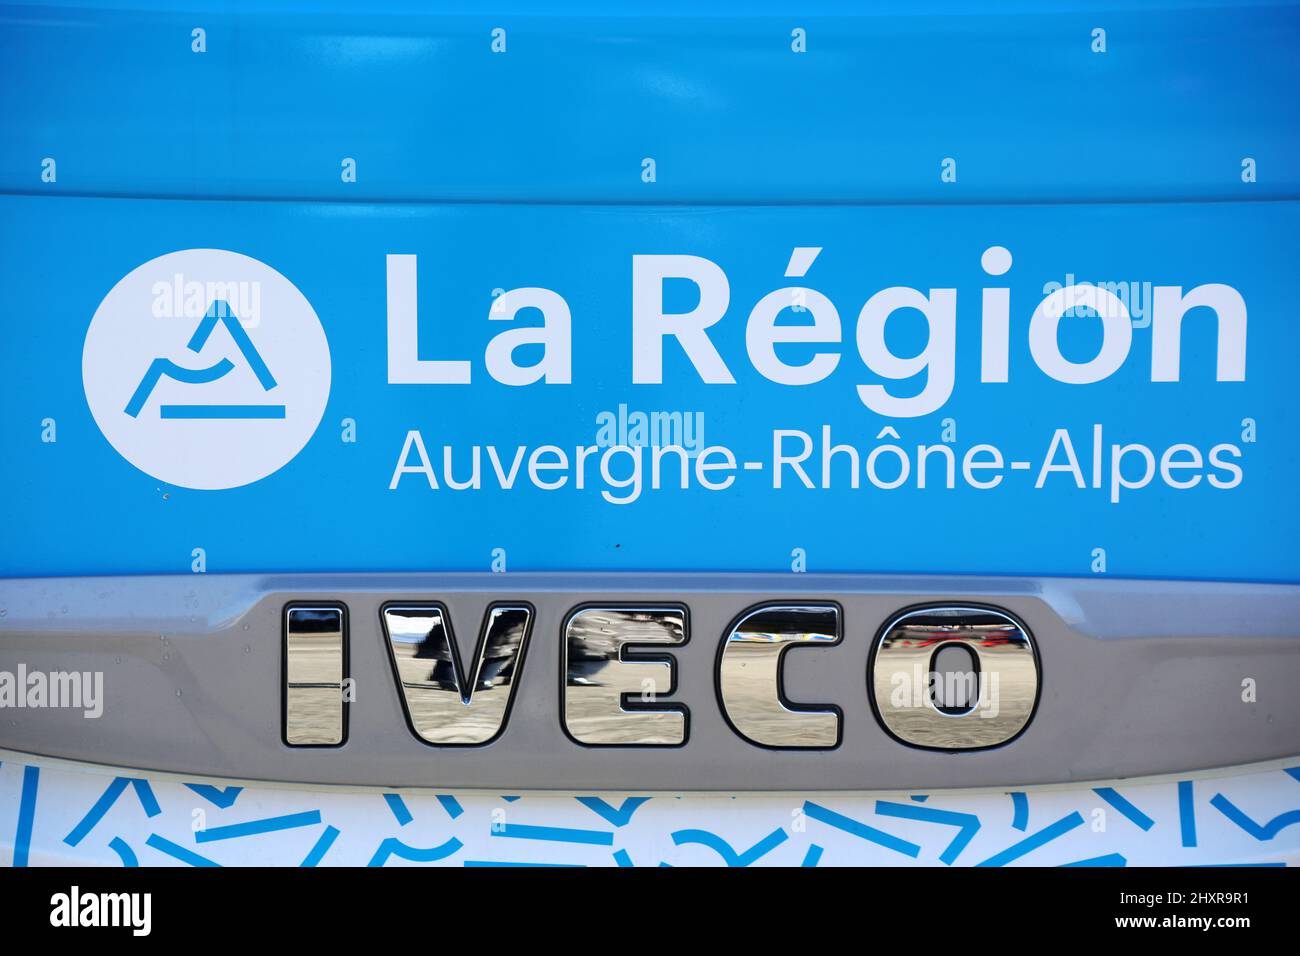 La Région Auvergne-Rhône-Alpes. Inscription sur un car. Saint-Gervais-les-Bains. Haute-Savoie. Auvergne-Rhône-Alpes. France. Stock Photo